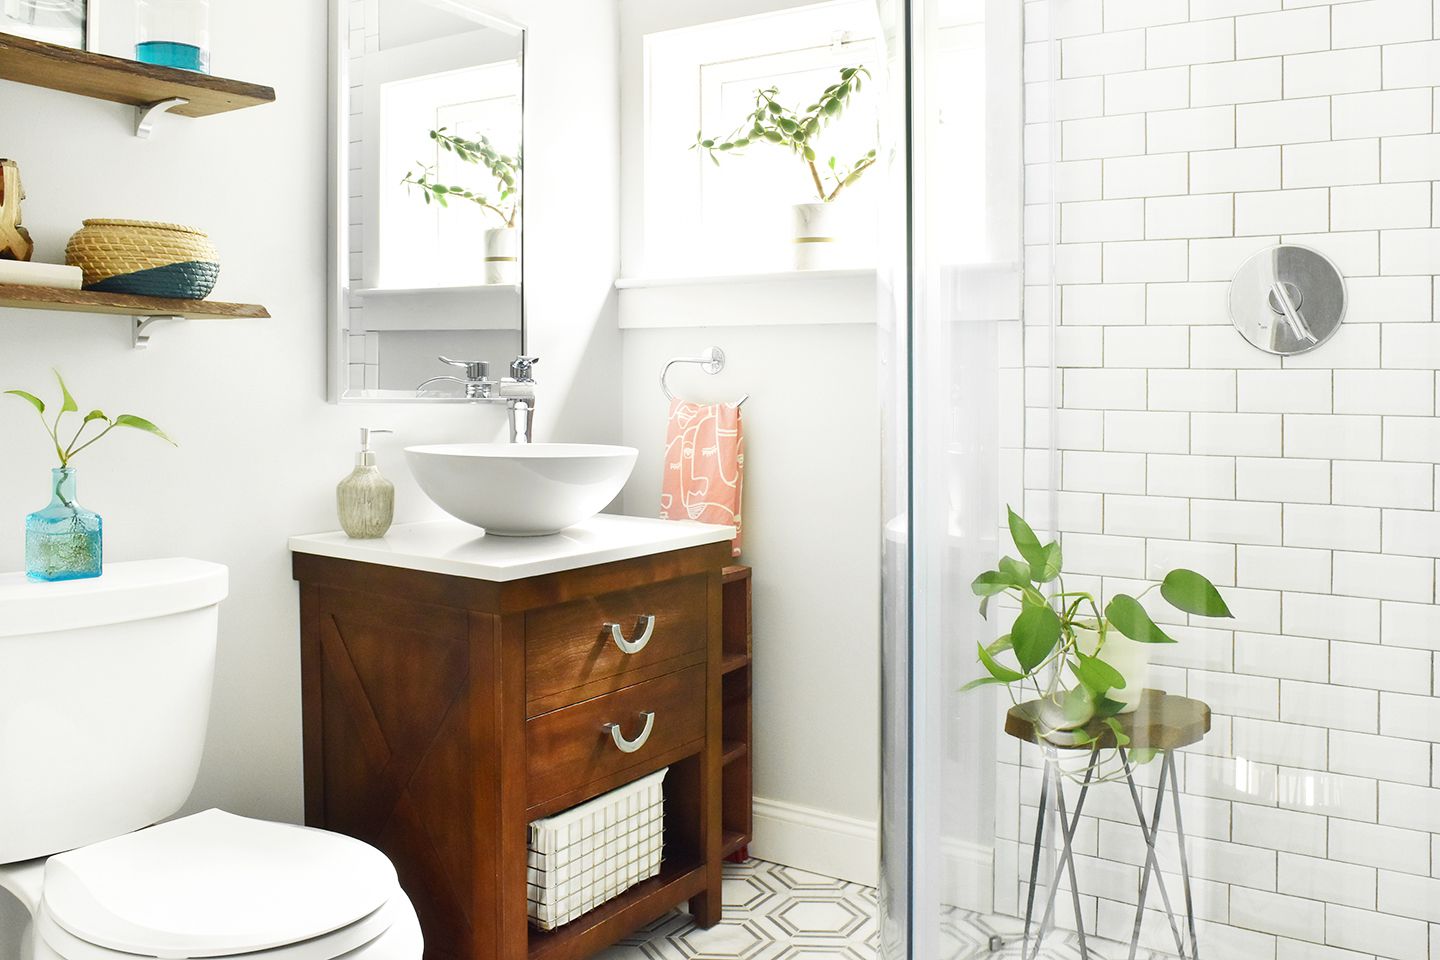 Kleines Bad mit Glasduschwand und Gefäßwaschbecken mit hellem Dekor und Zimmerpflanzen